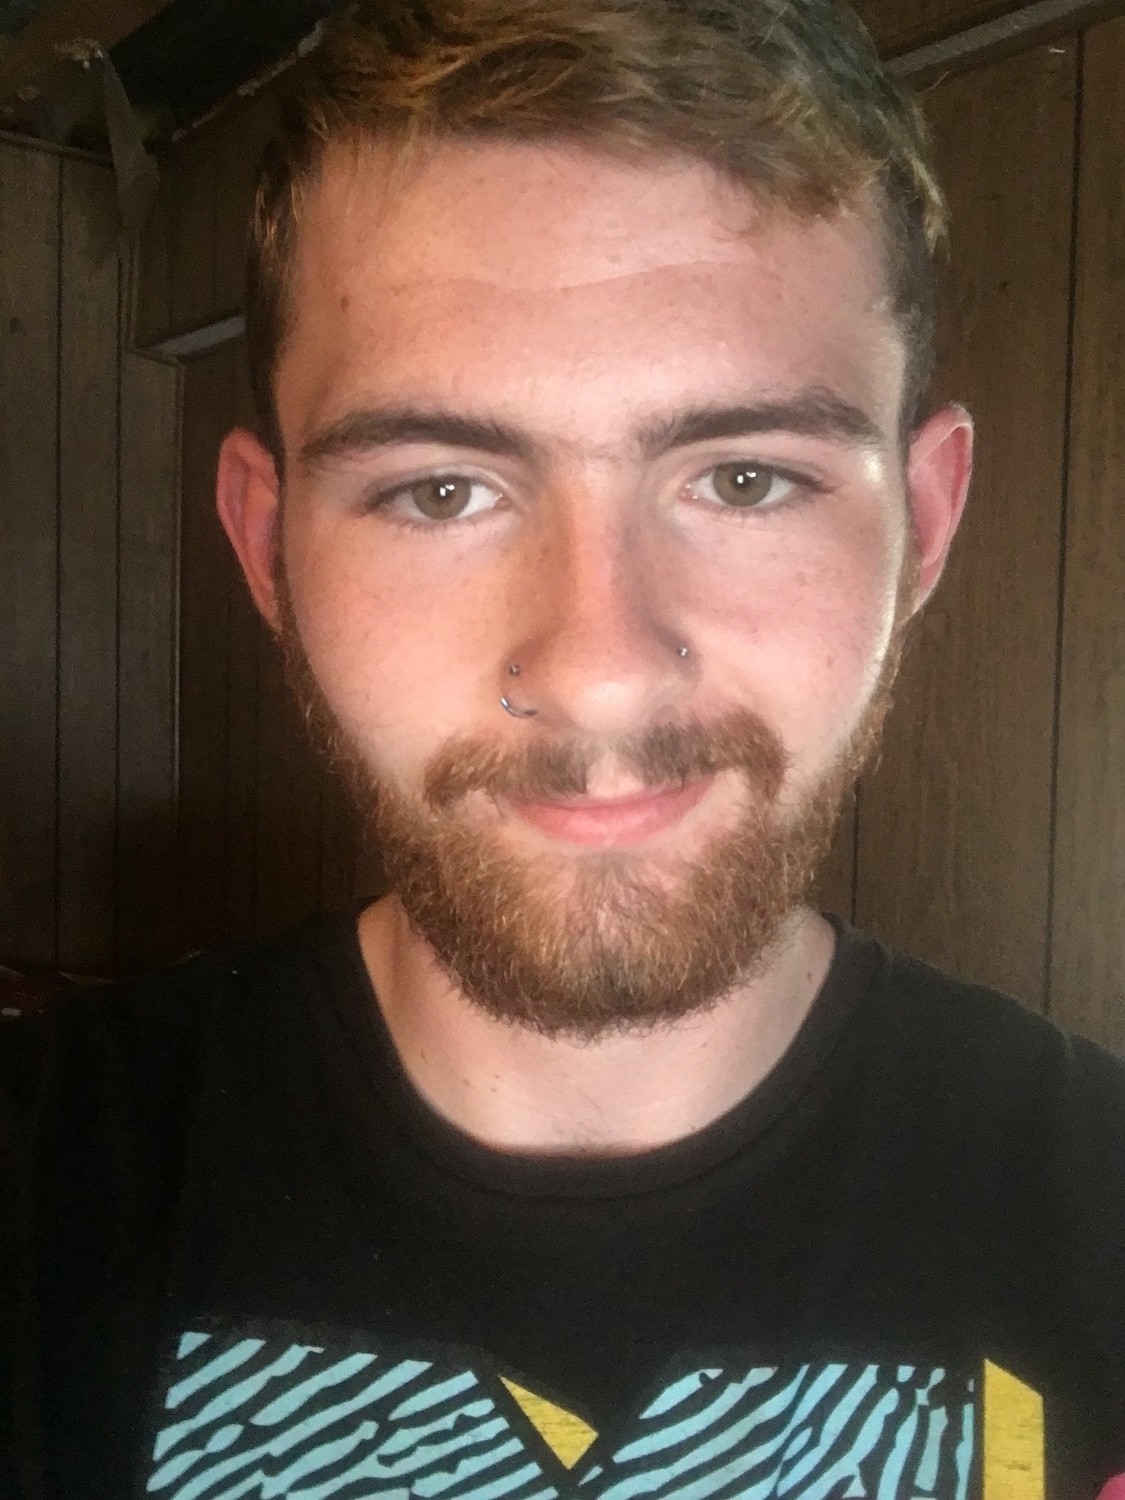 Selfie of Mathew Honeycutt wearing a black t-shirt, facial hair and nose piercings. September 2021